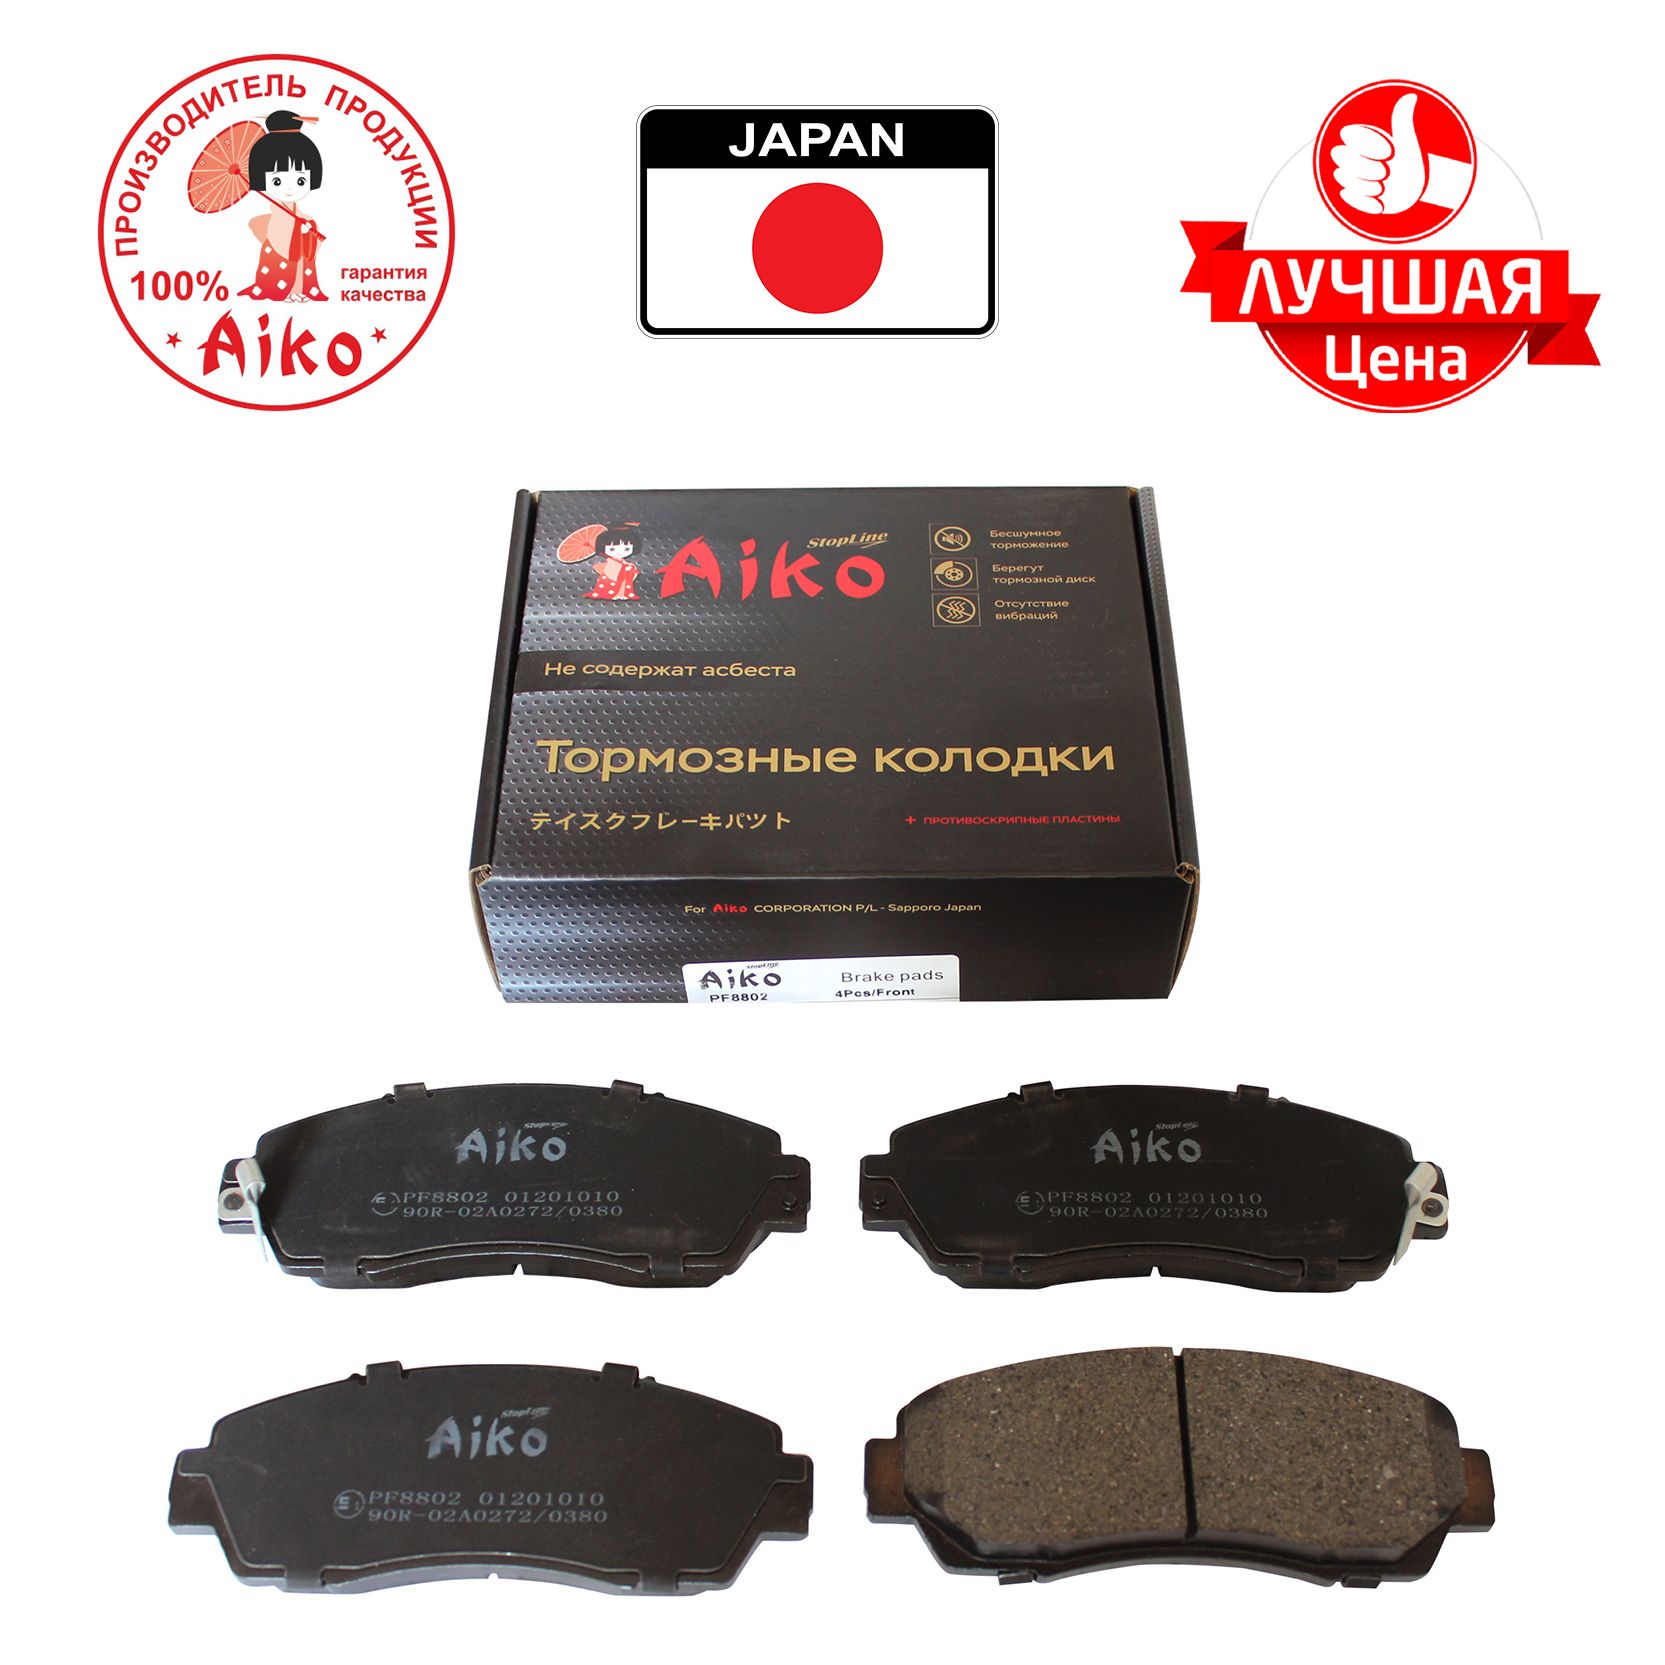 Тормозные колодки Aiko PF8802 Передние - купить по низким ценам в интернет-...